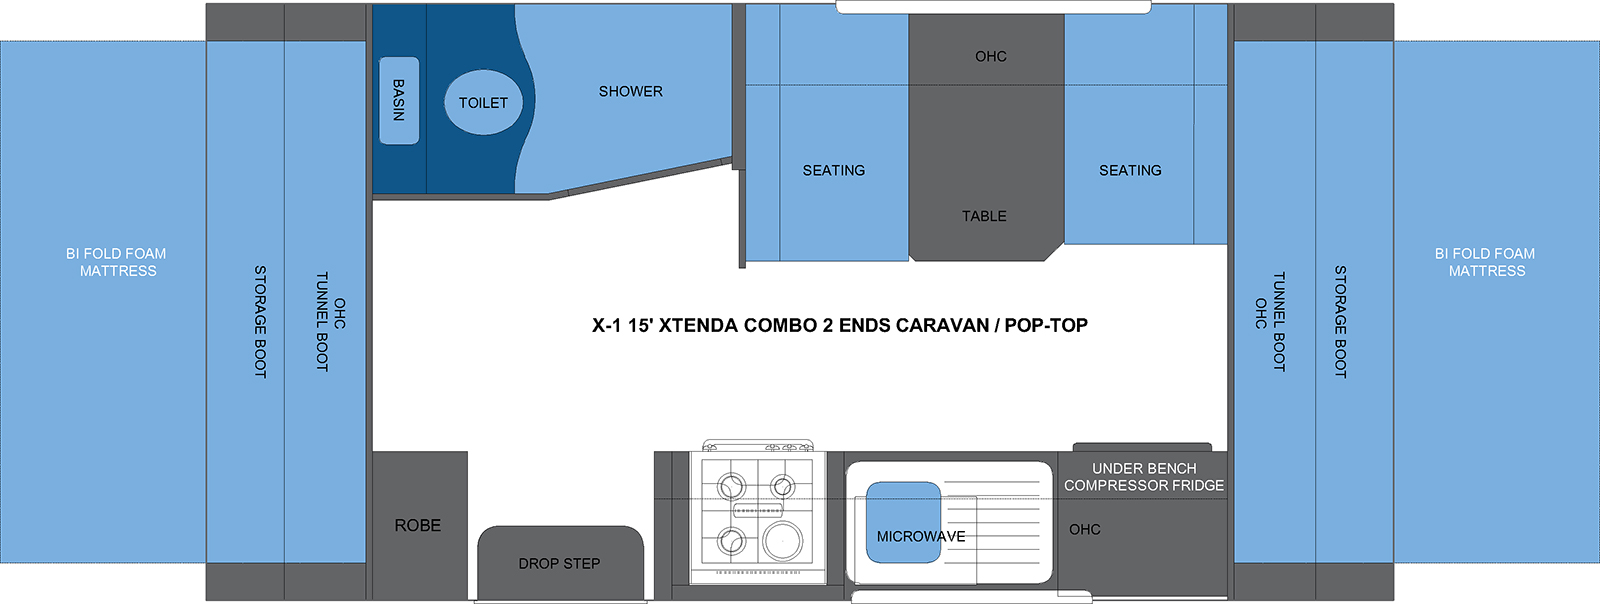 X-1 15' XTENDA COMBO 2 ENDS CARAVAN